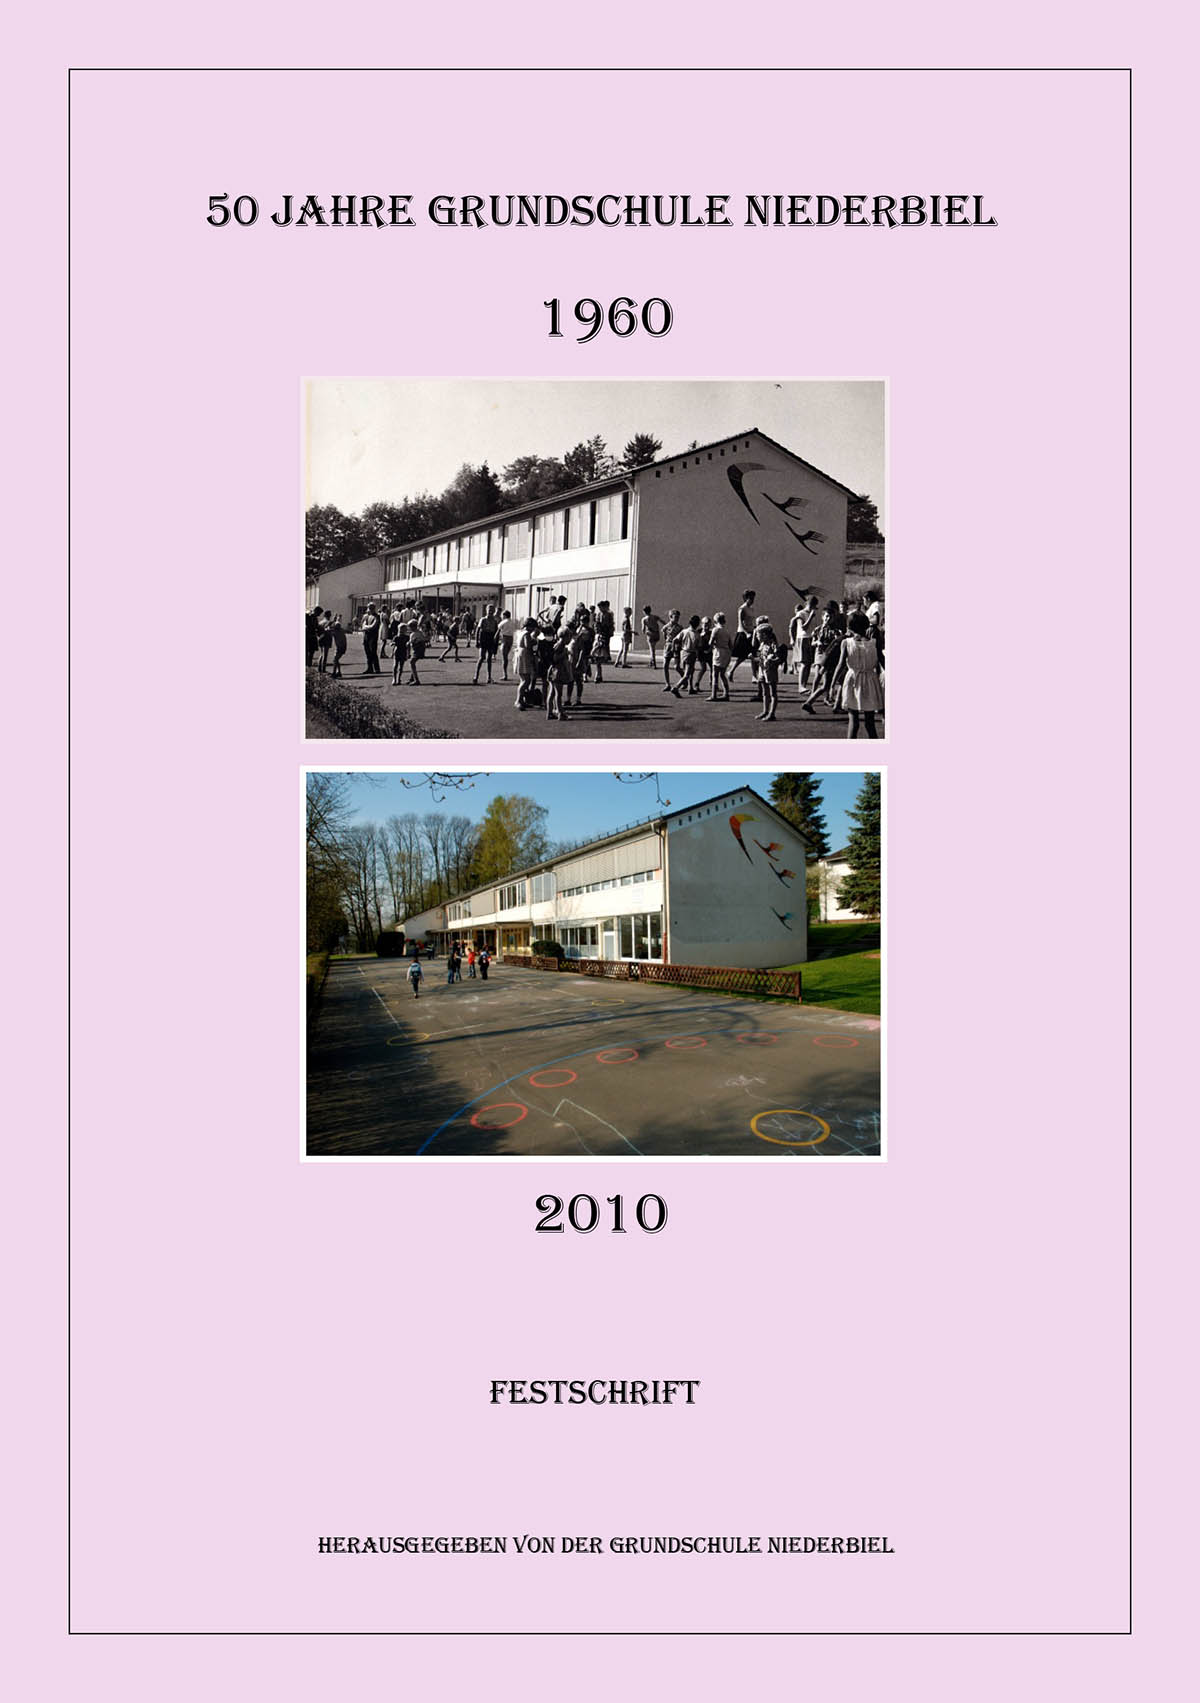 Grundschule Niederbiel - Festschrift 50 Jahrfeier